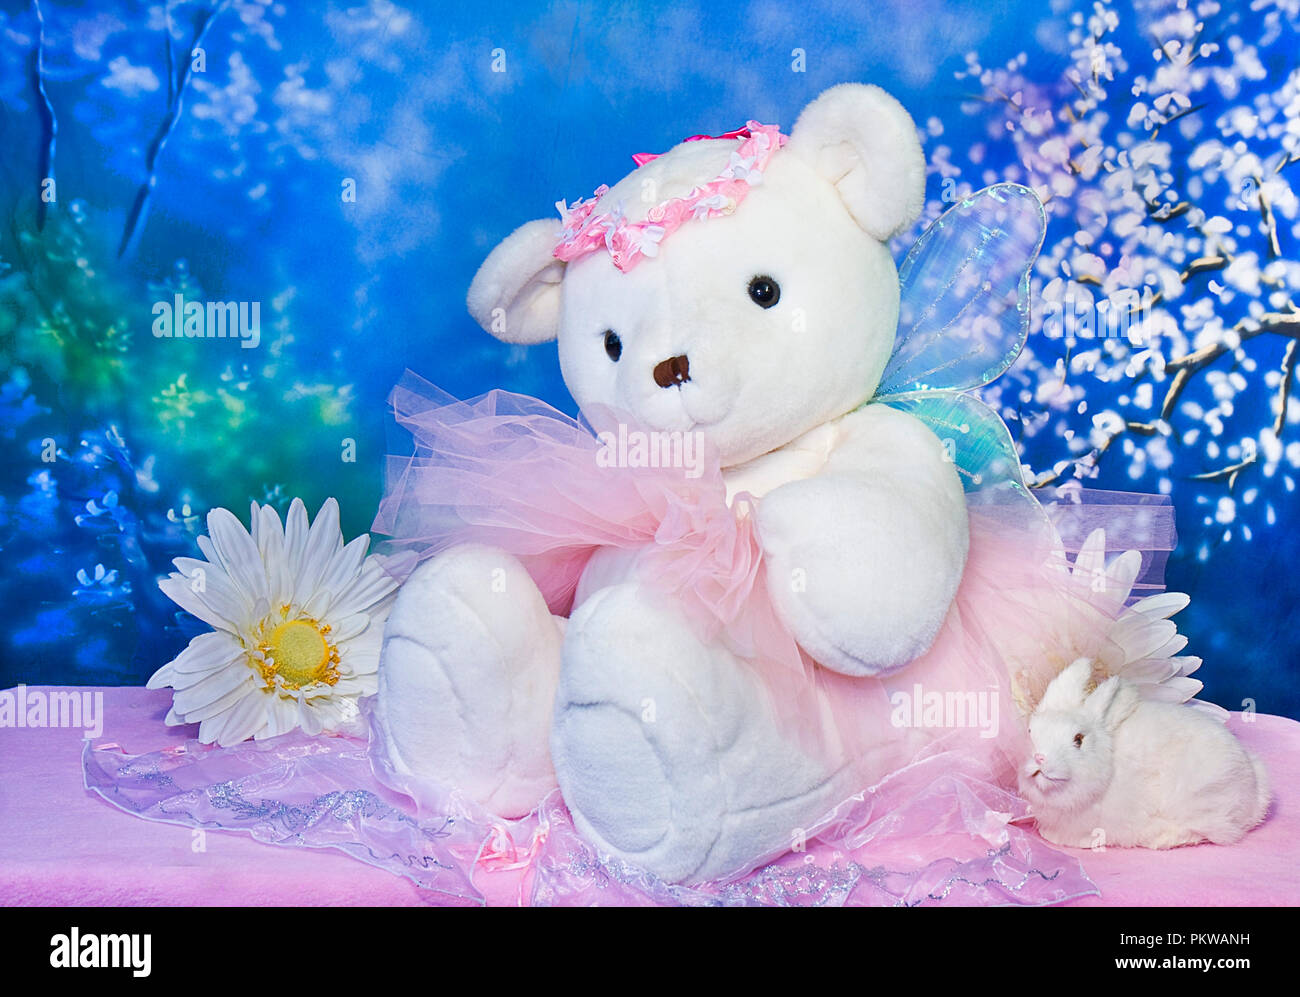 Grand ours en peluche blanc portant tutu rose isolé sur fond bleu magique Banque D'Images